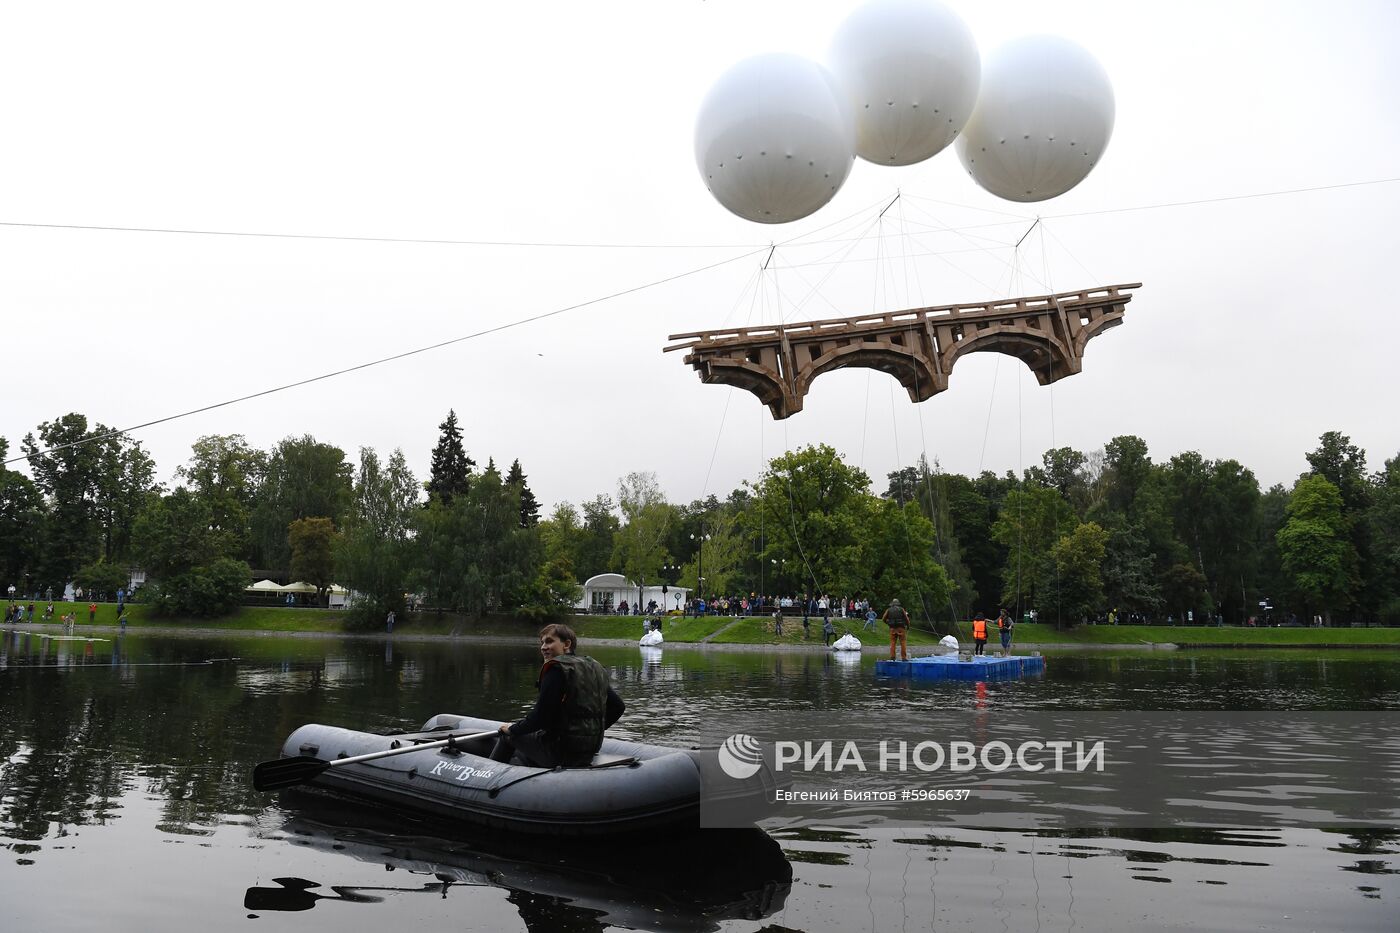 "Парящий мост" в парке Останкино к юбилею ВДНХ